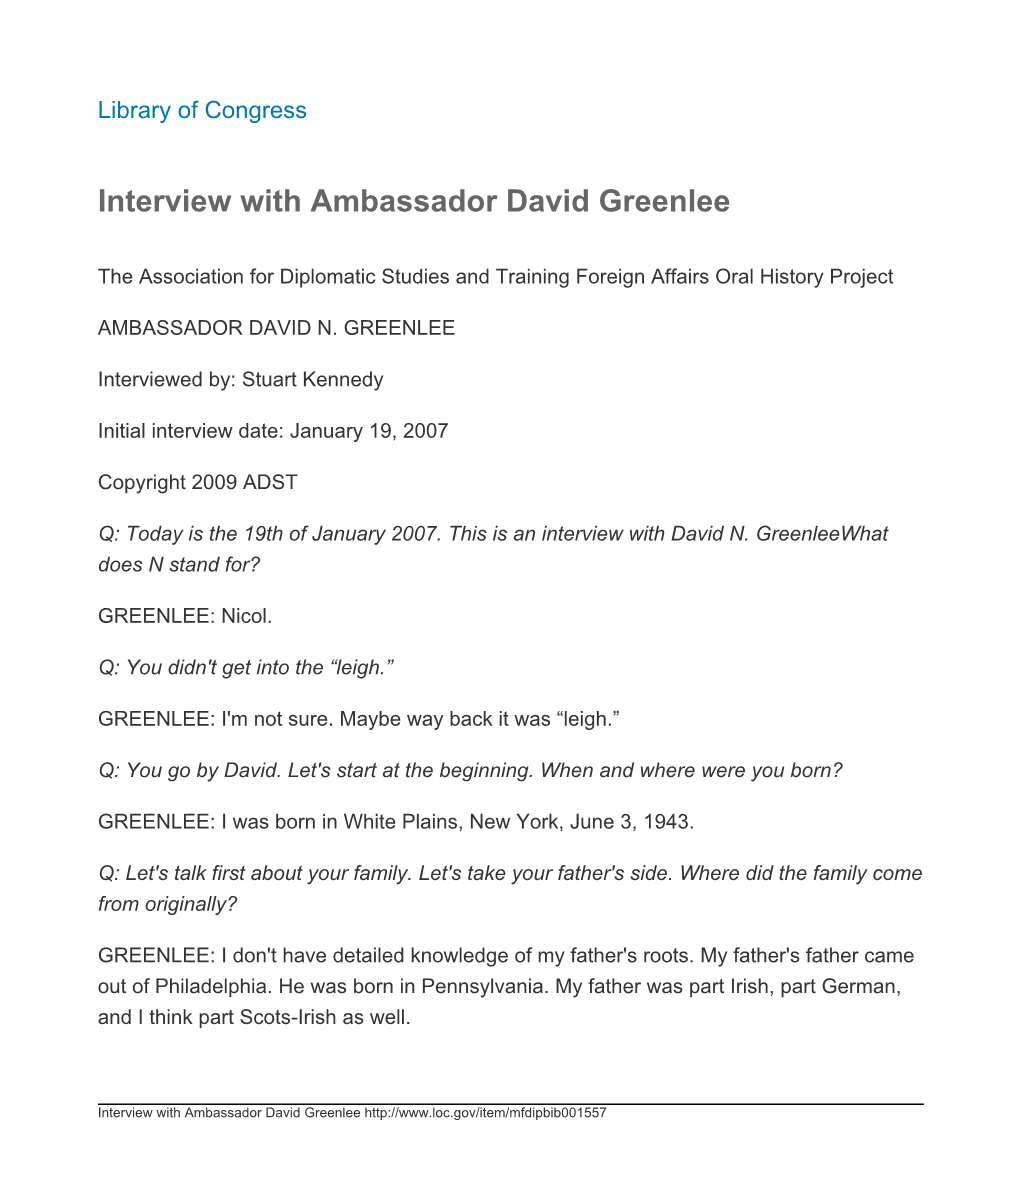 Interview with Ambassador David Greenlee